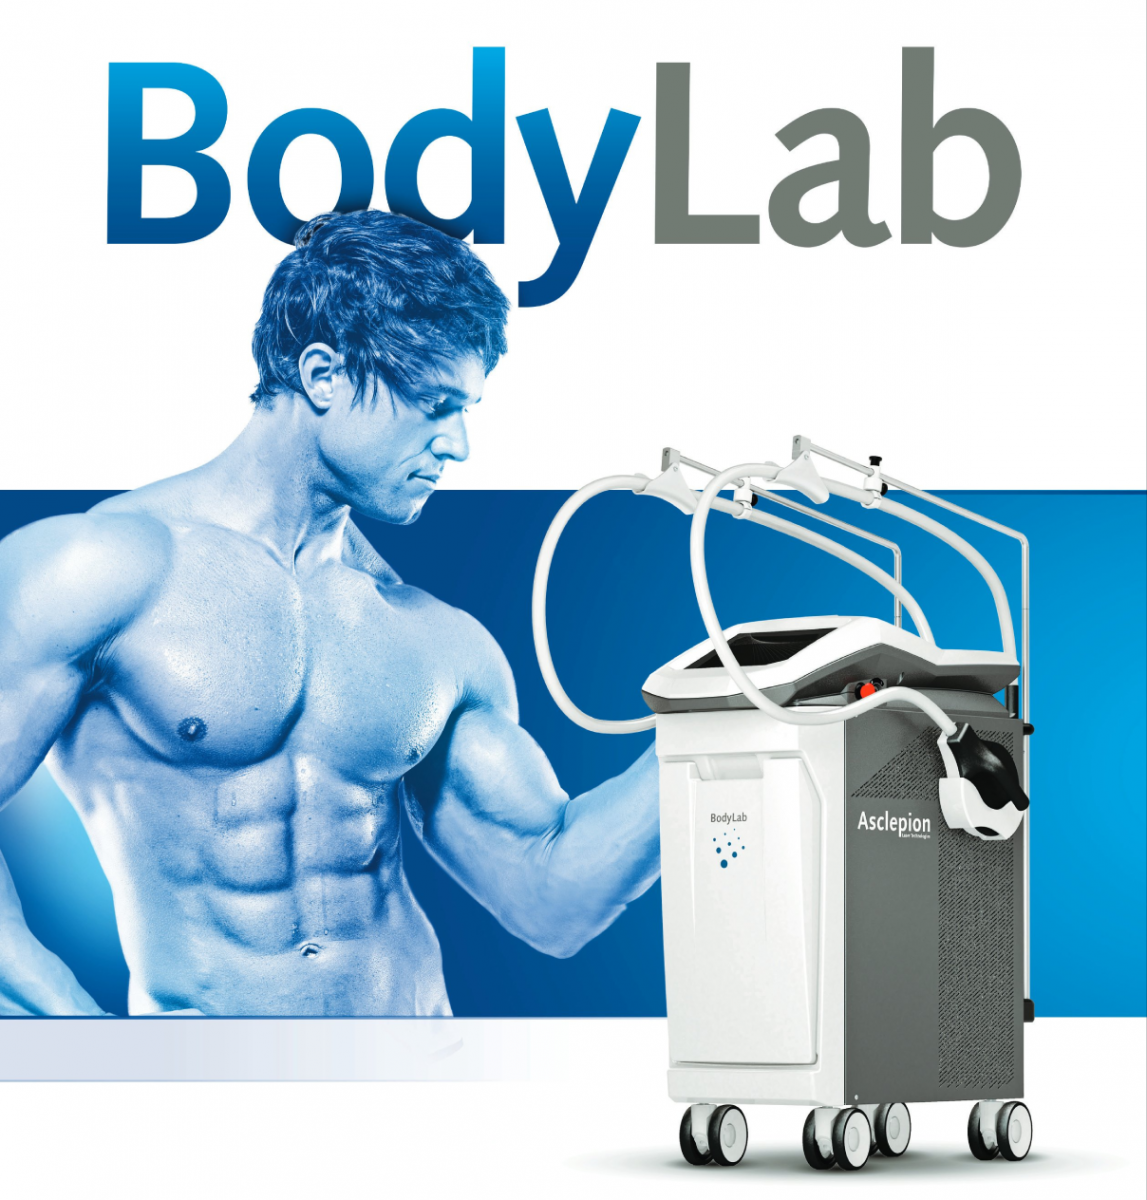 Аппарат для коррекции фигуры и лечения целлюлита - Asclepion: BodyLab